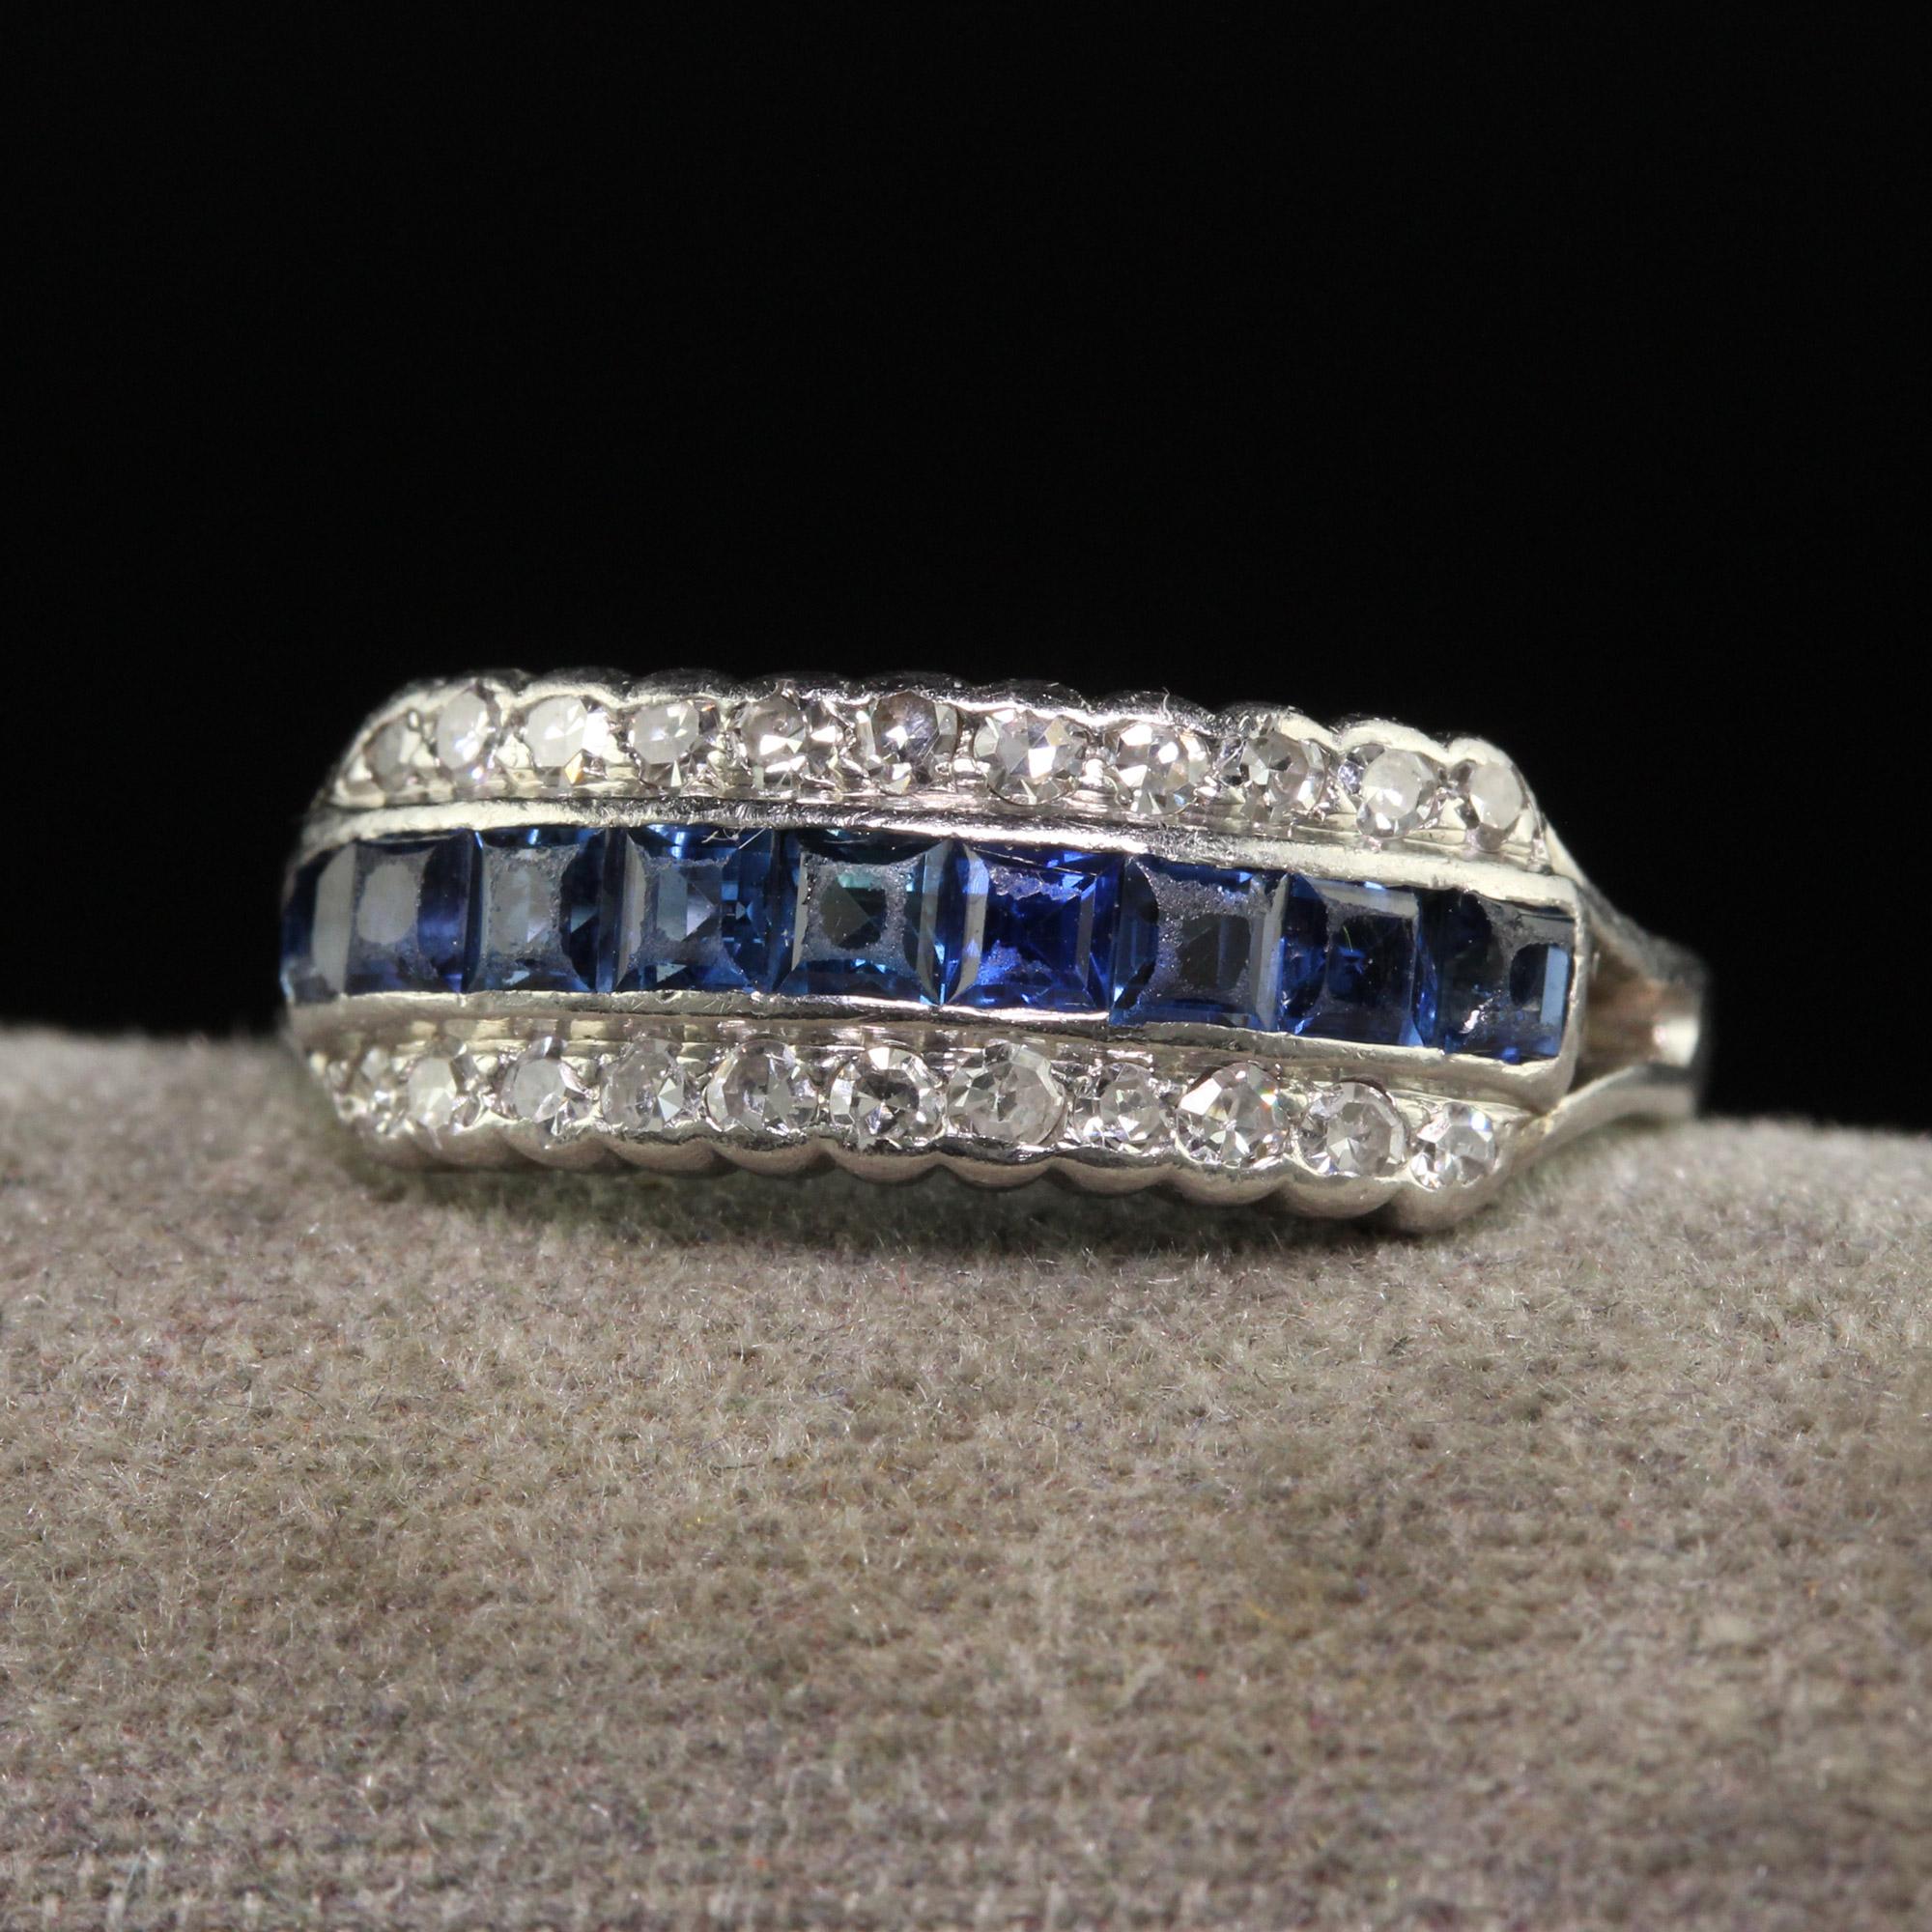 Schöne antike Art Deco Platin Single Cut Diamant und Saphir drei Reihen Band Ring. Dieser wunderschöne dreireihige Diamant- und Saphirring im Art-Deco-Stil ist aus Platin gefertigt. Der obere Teil des Rings besteht aus natürlichen Saphiren, die sich